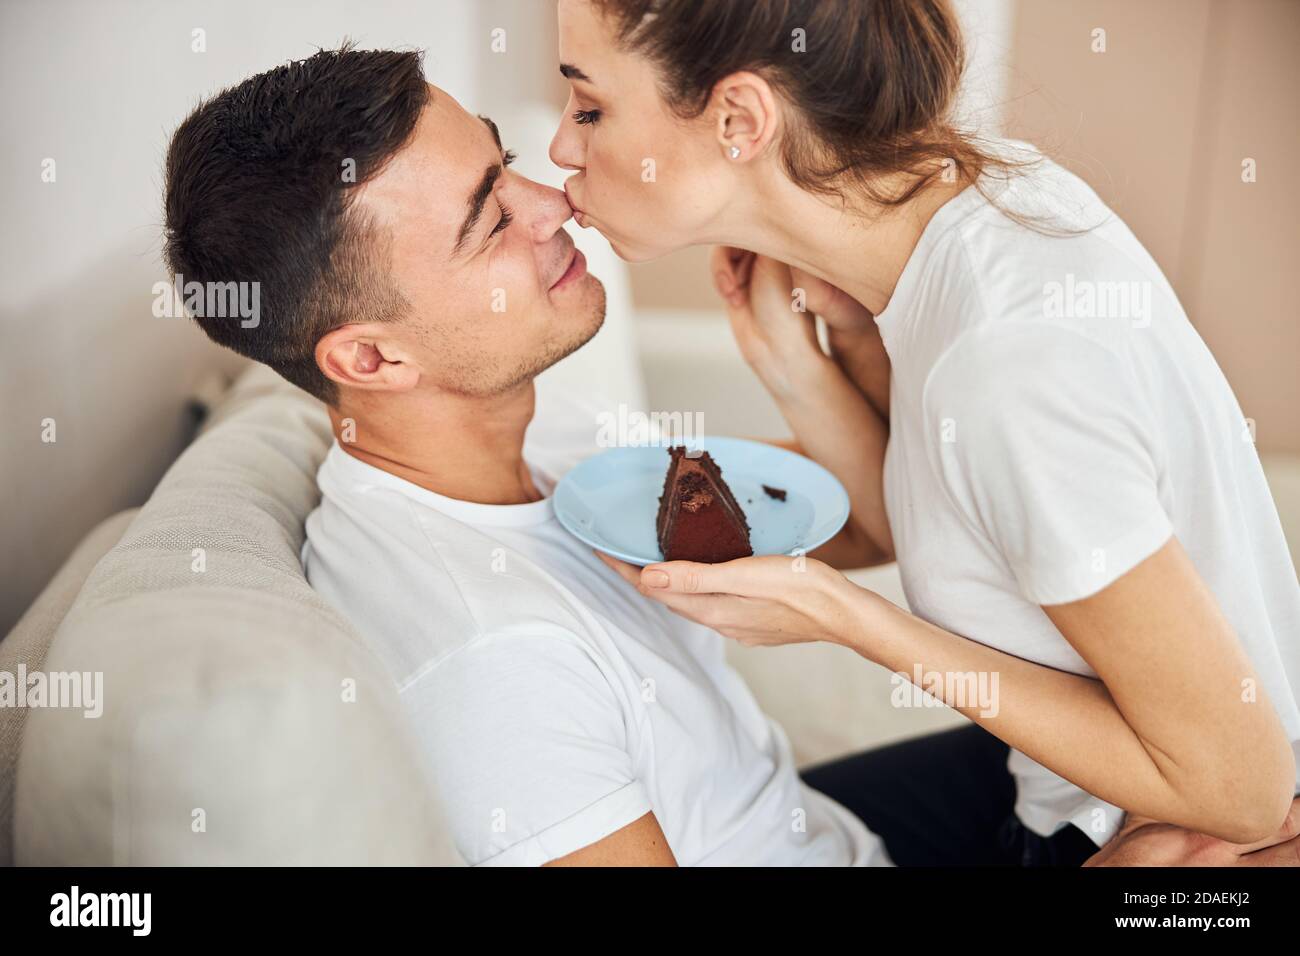 Liebevolle Frau hält Teller mit Kuchen und küsst ihren Mann Stockfoto